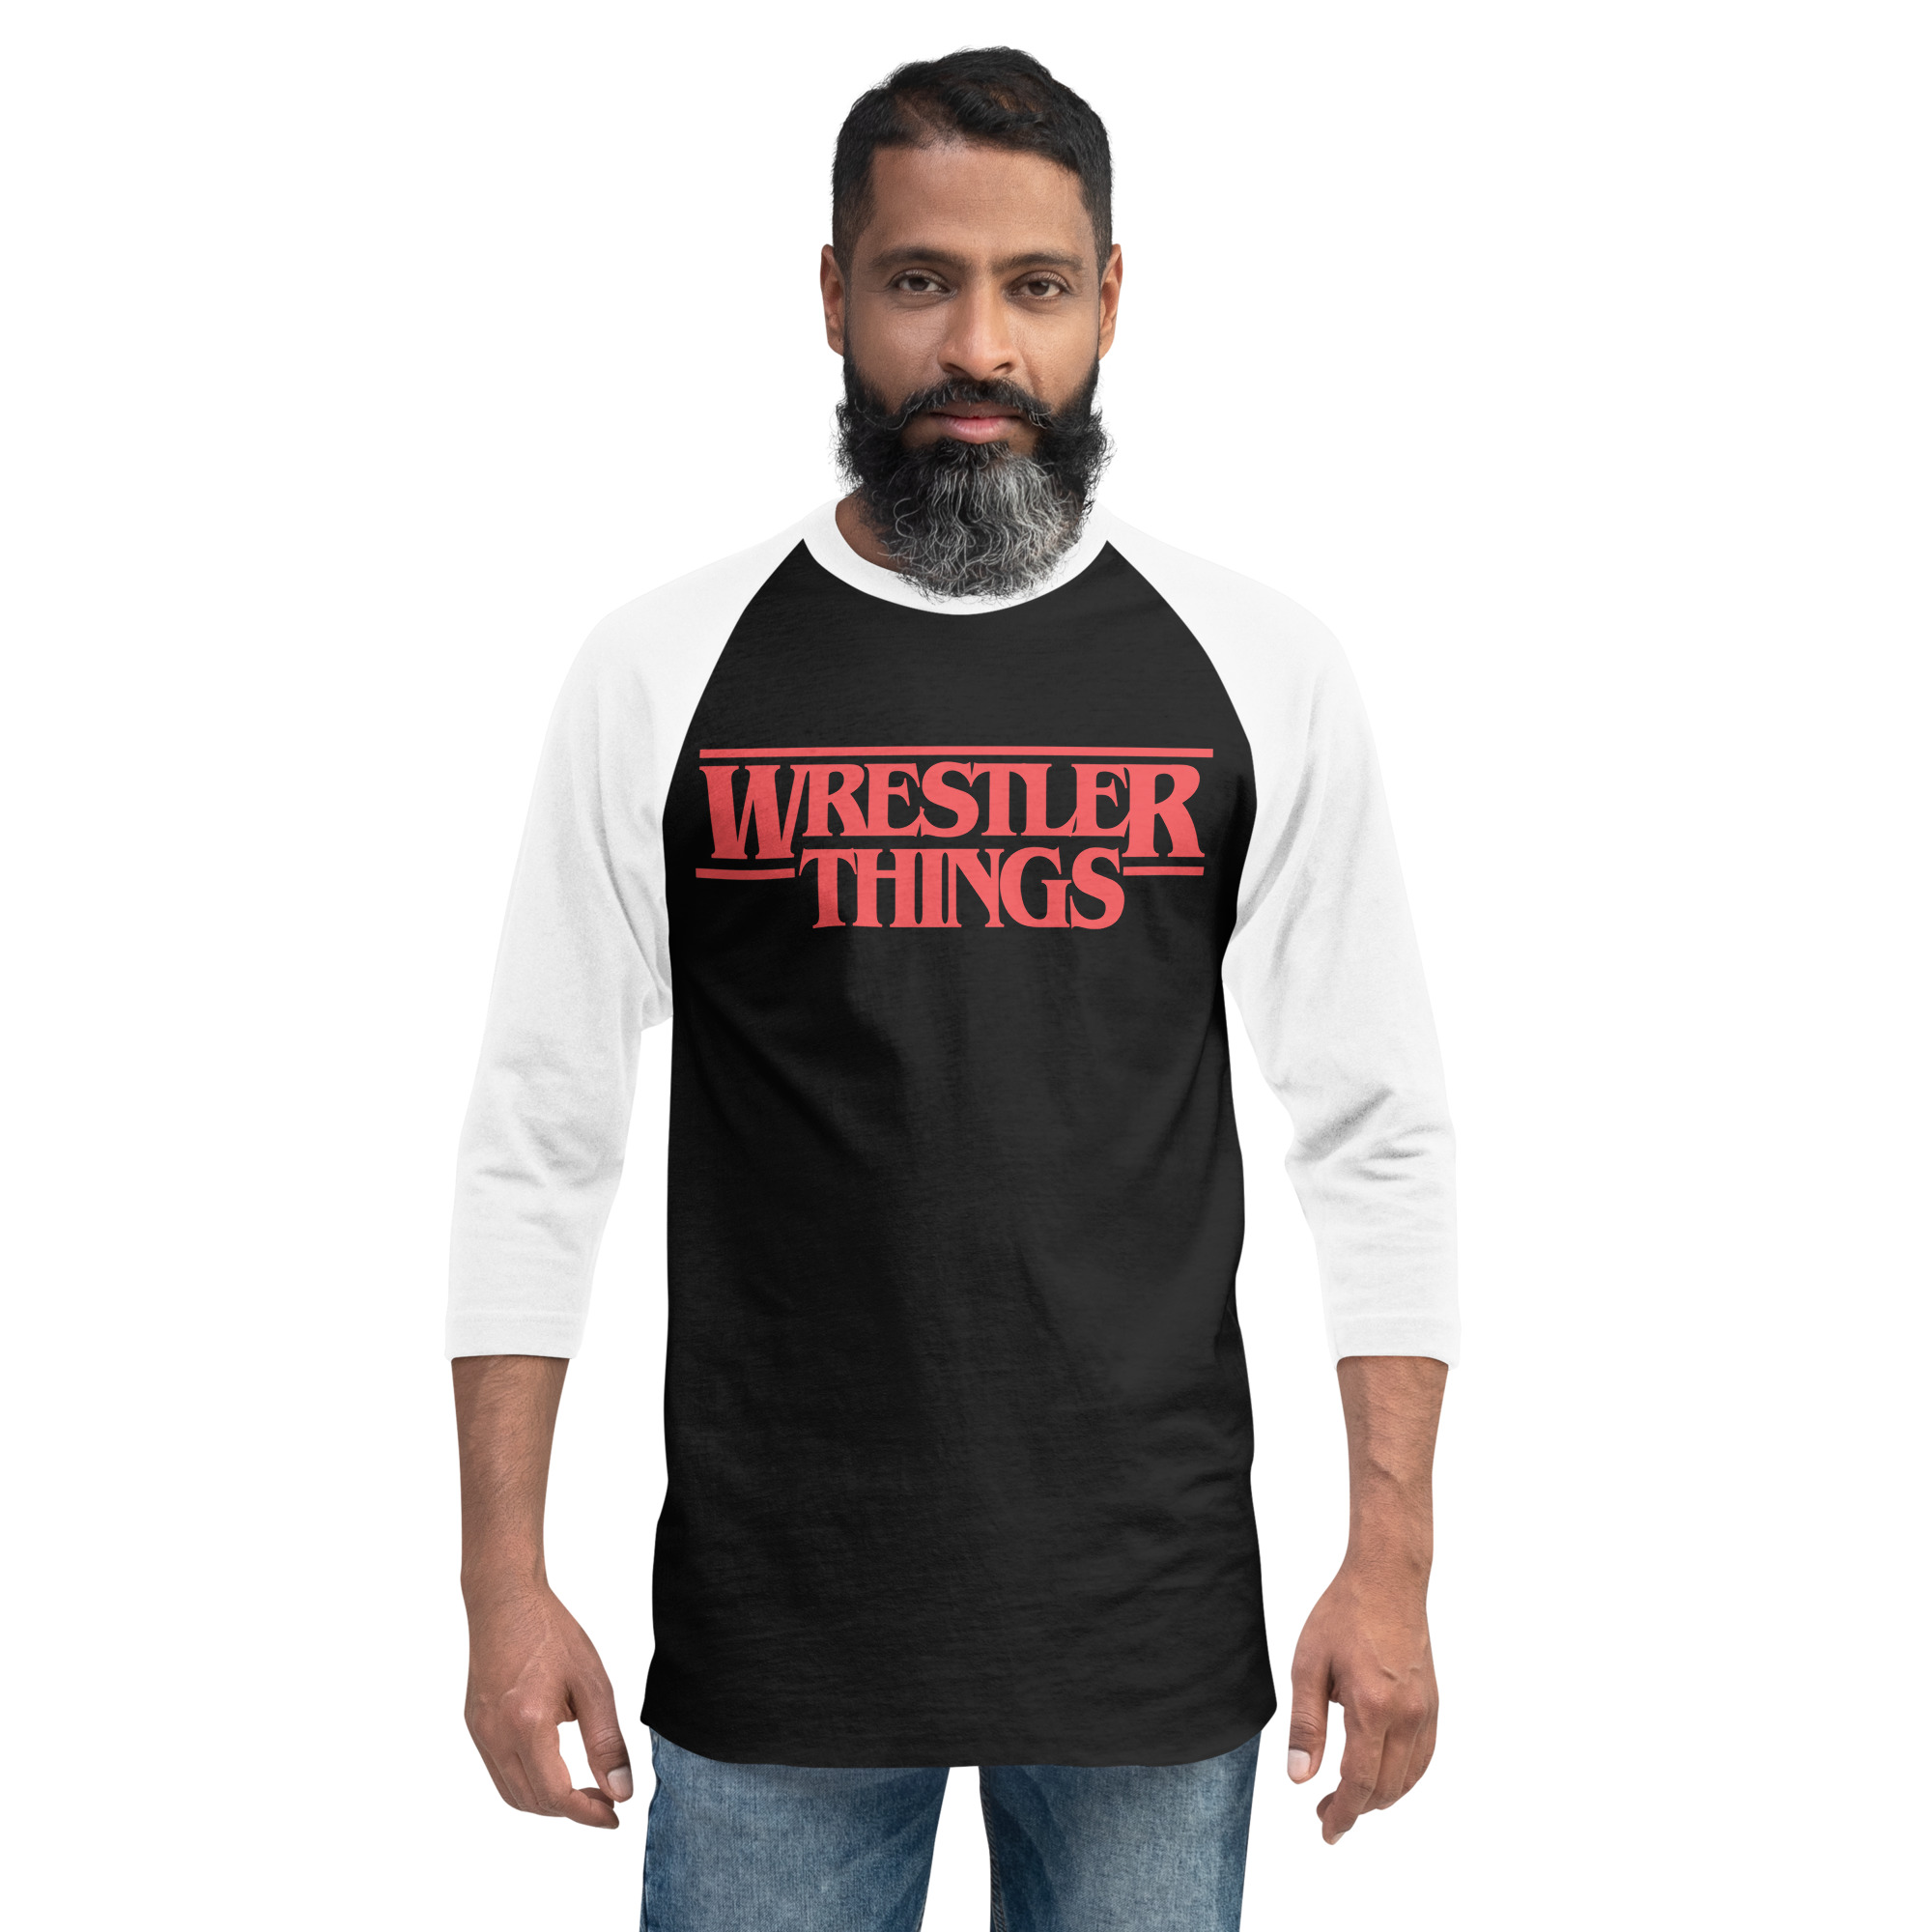 Wrestler Things 3/4 sleeve raglan shirt